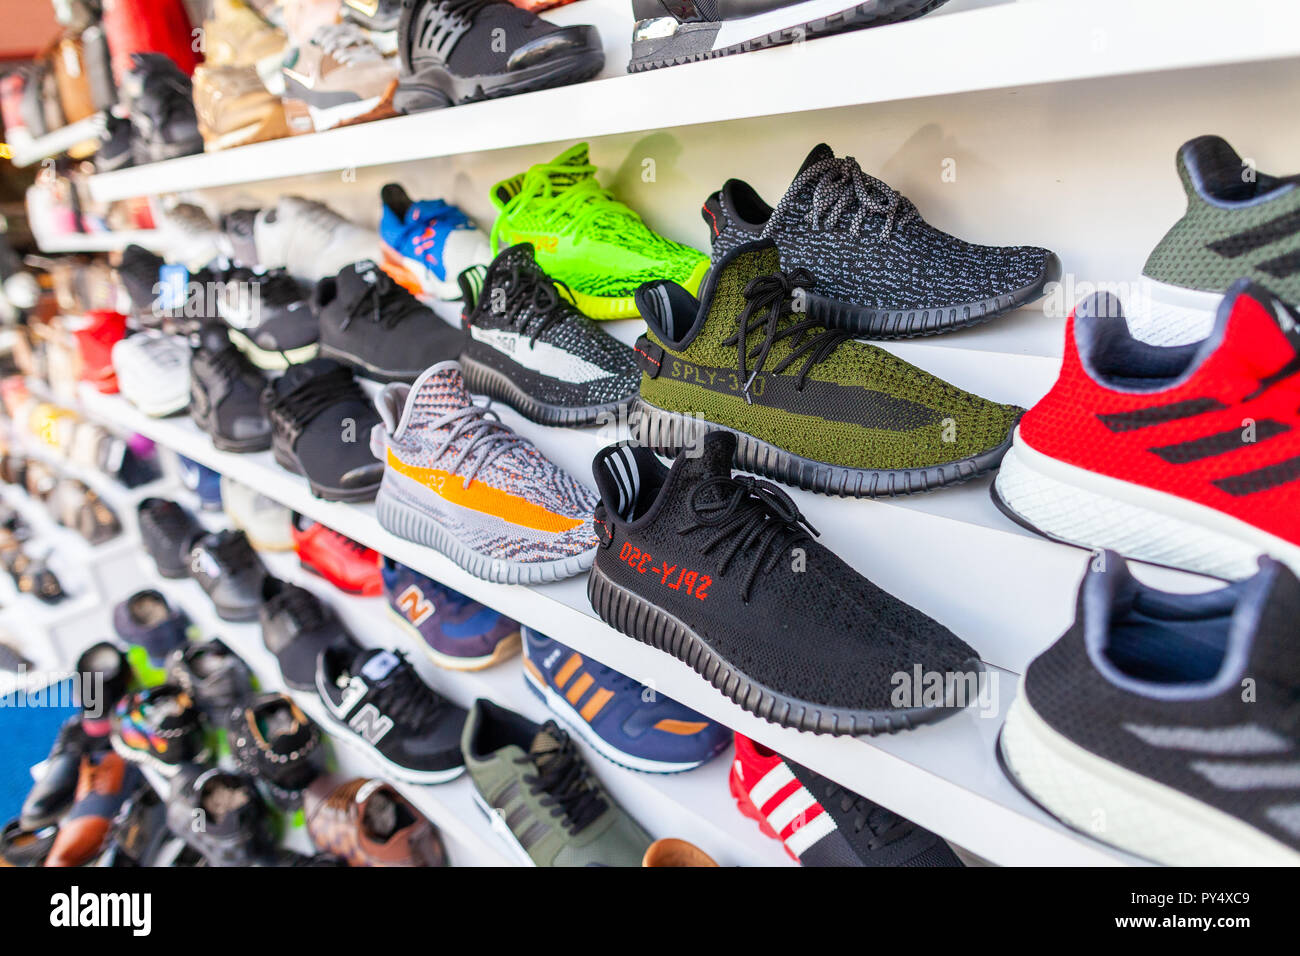 ALANYA/TÜRKEI - September 30, 2018: Schuhe von verschiedenen Marken steht  in einem Geschäft in Alanya Stockfotografie - Alamy